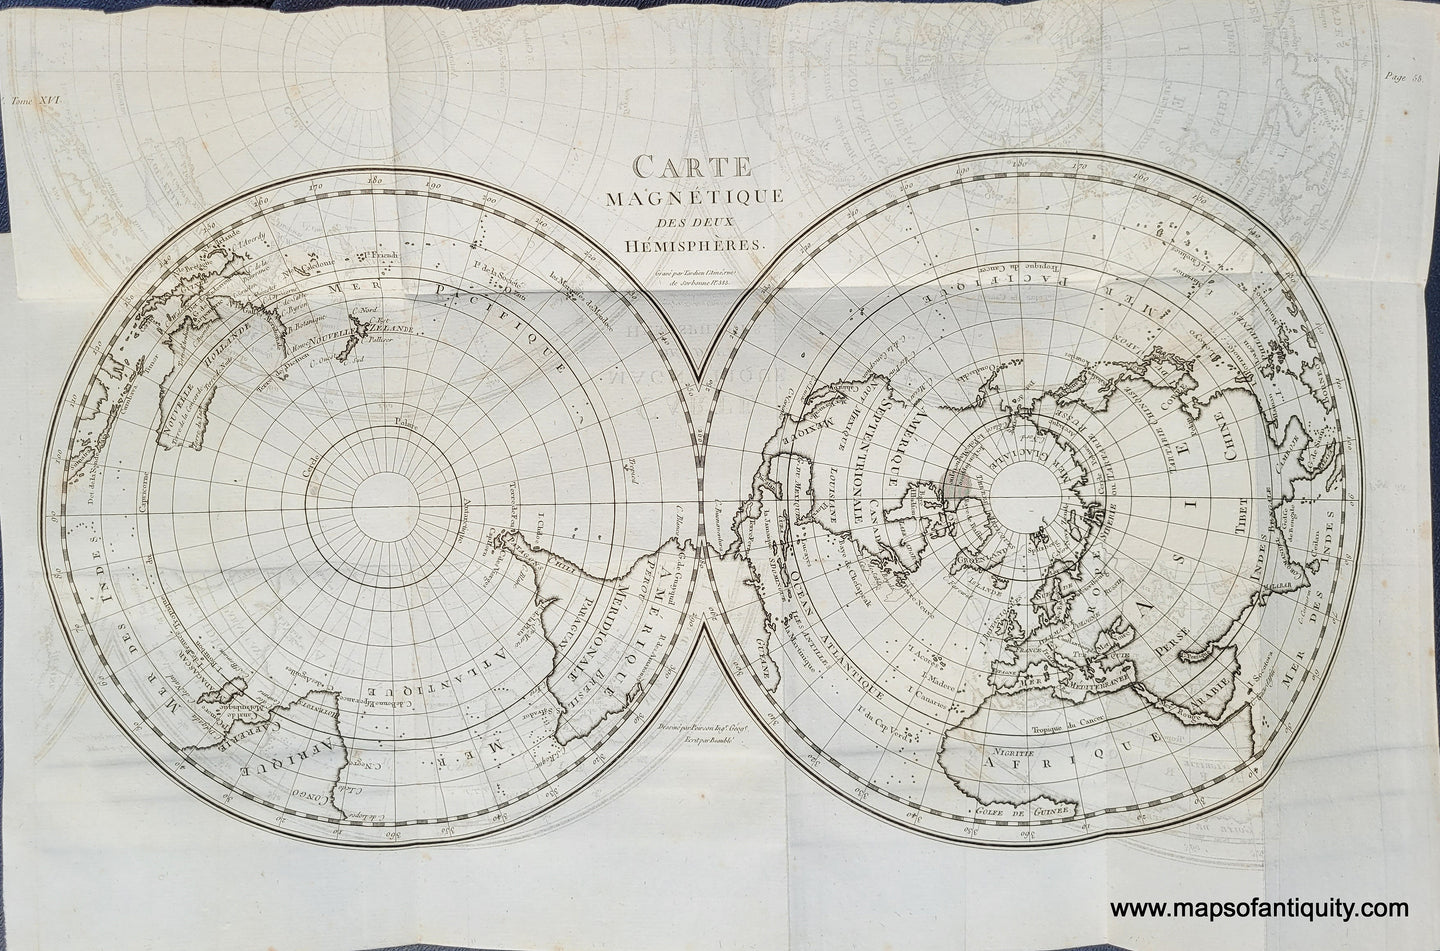 Genuine-Antique-Map-Carte-Magnetique-des-Deux-Hemispheres-1795-Tardieu-Buffon-Maps-Of-Antiquity